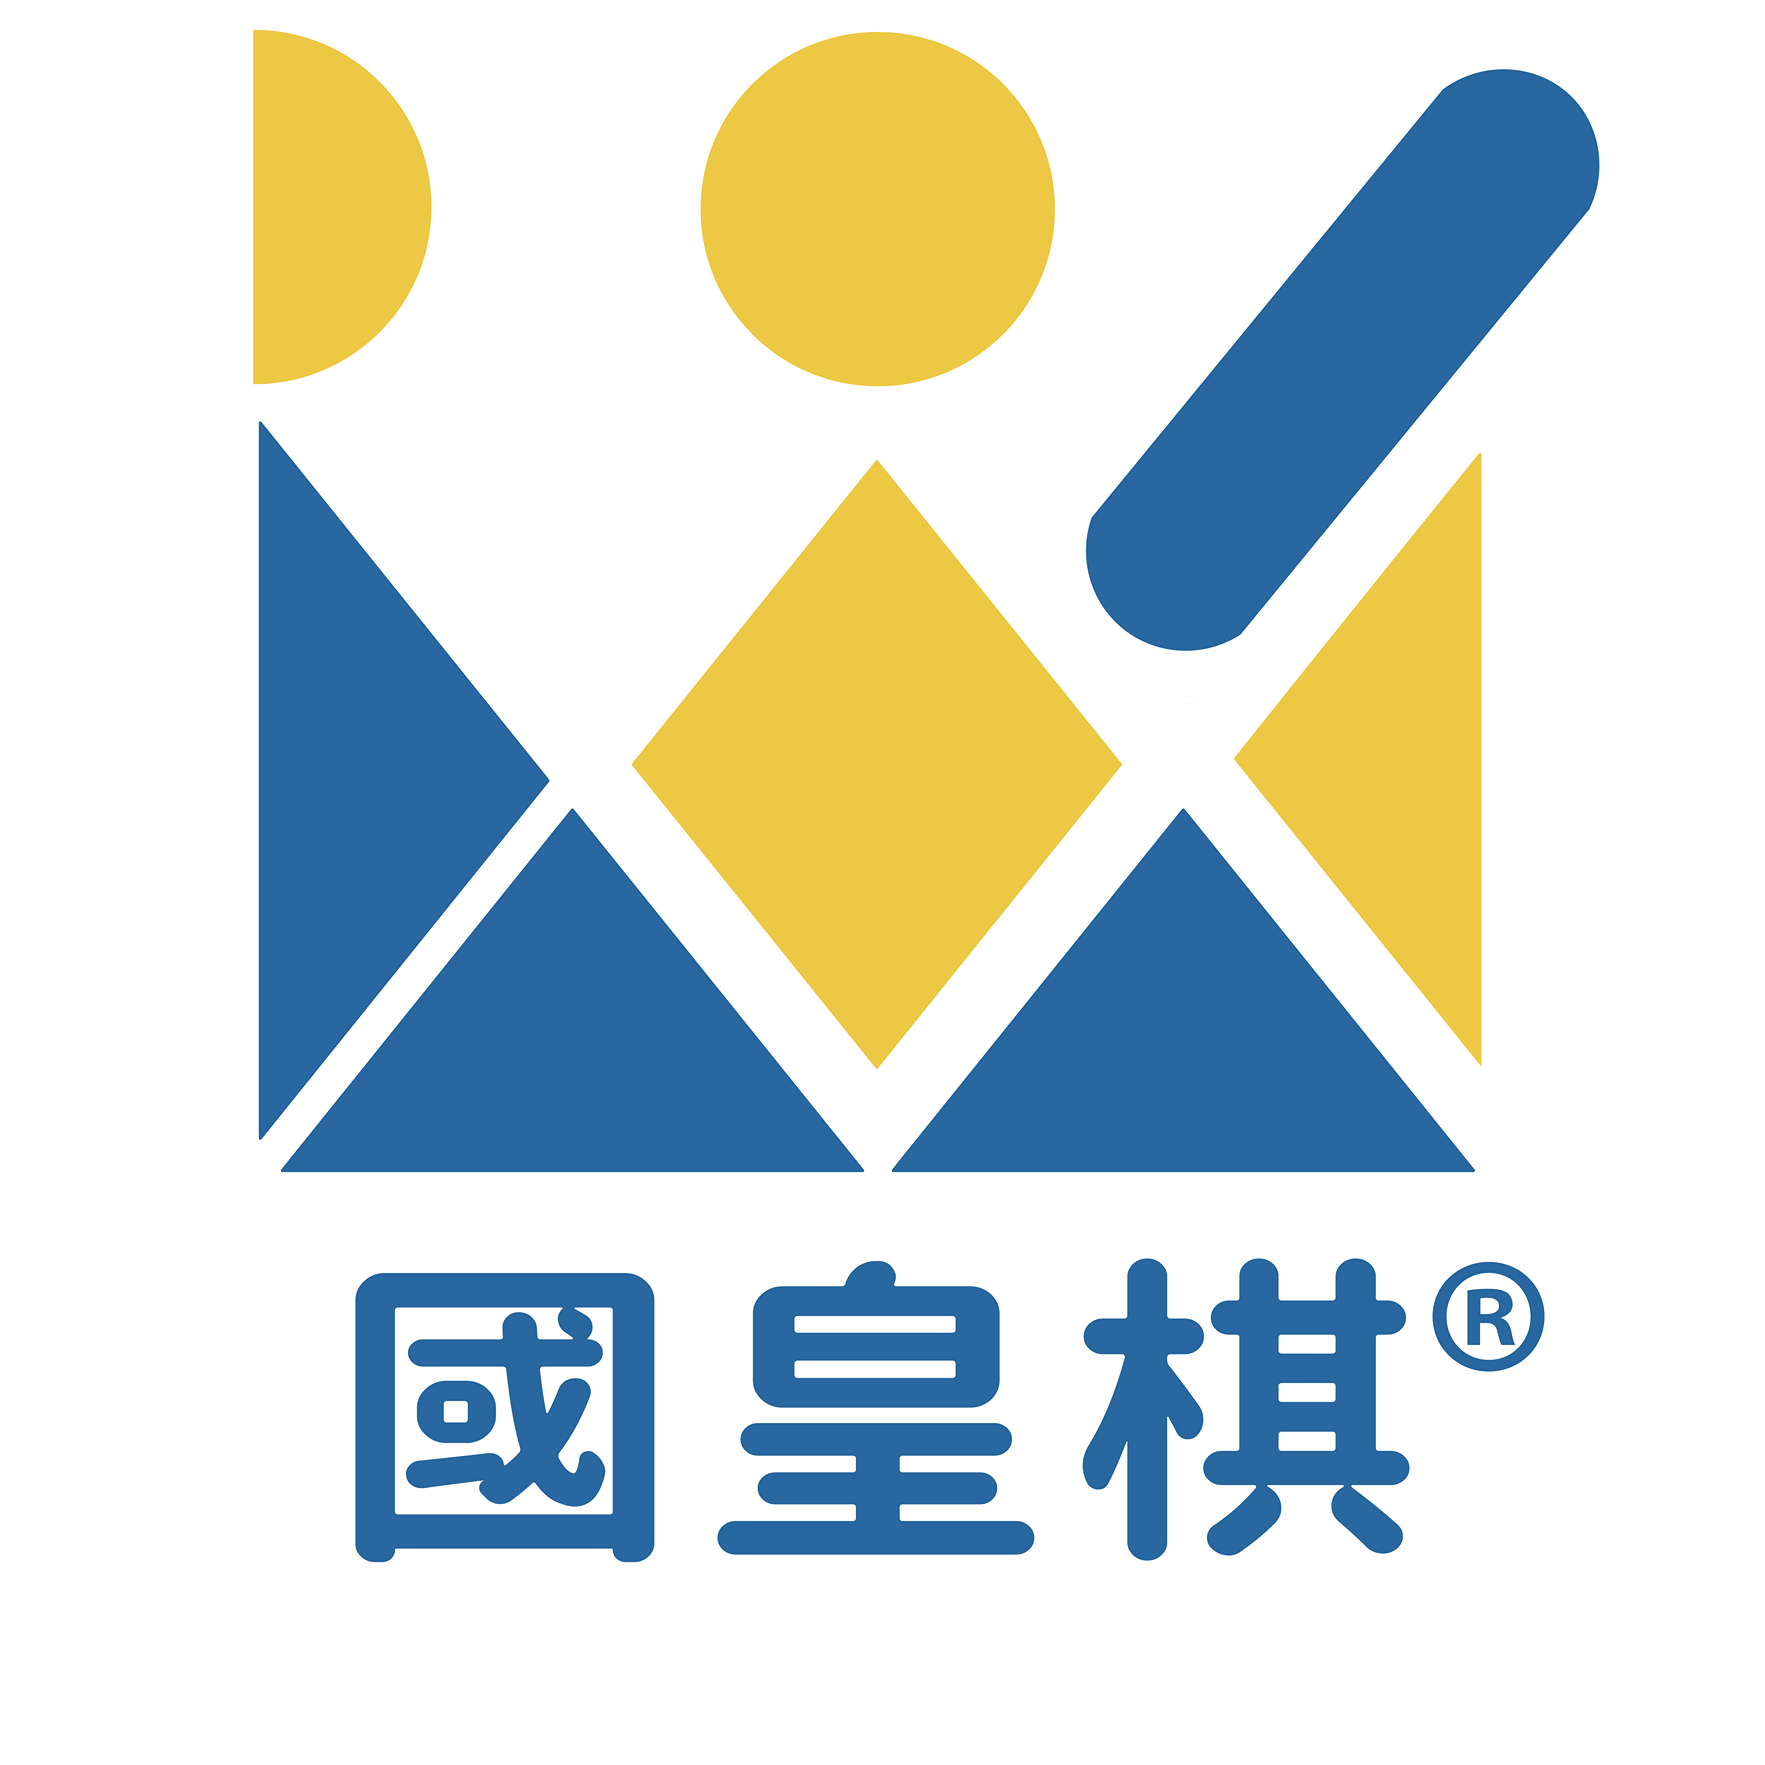 Hong Kong Kubb Association